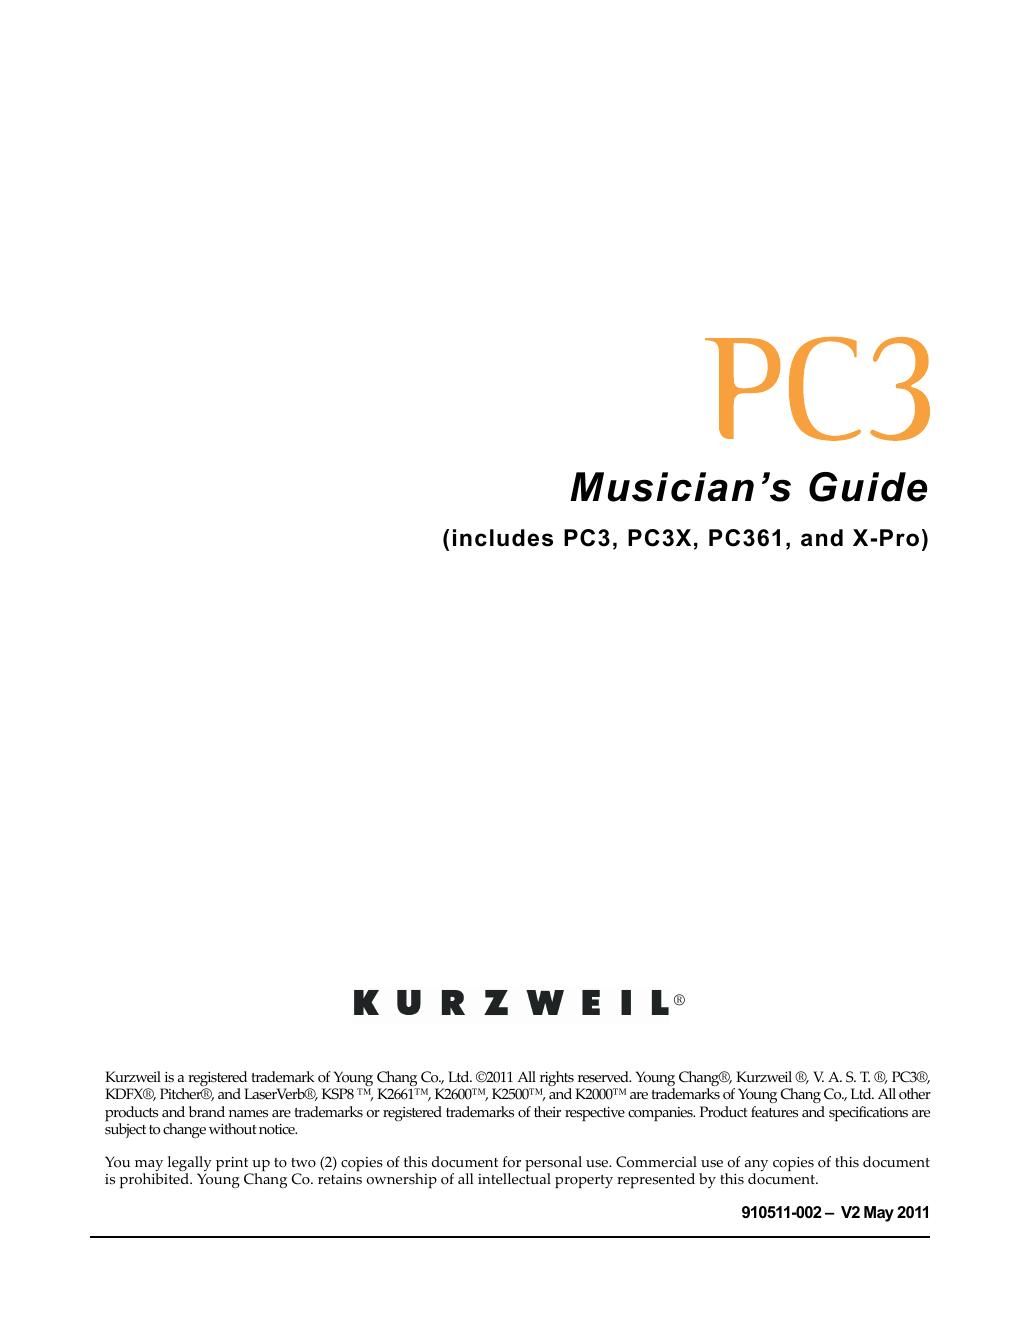 kurzweil pc3 musician guide